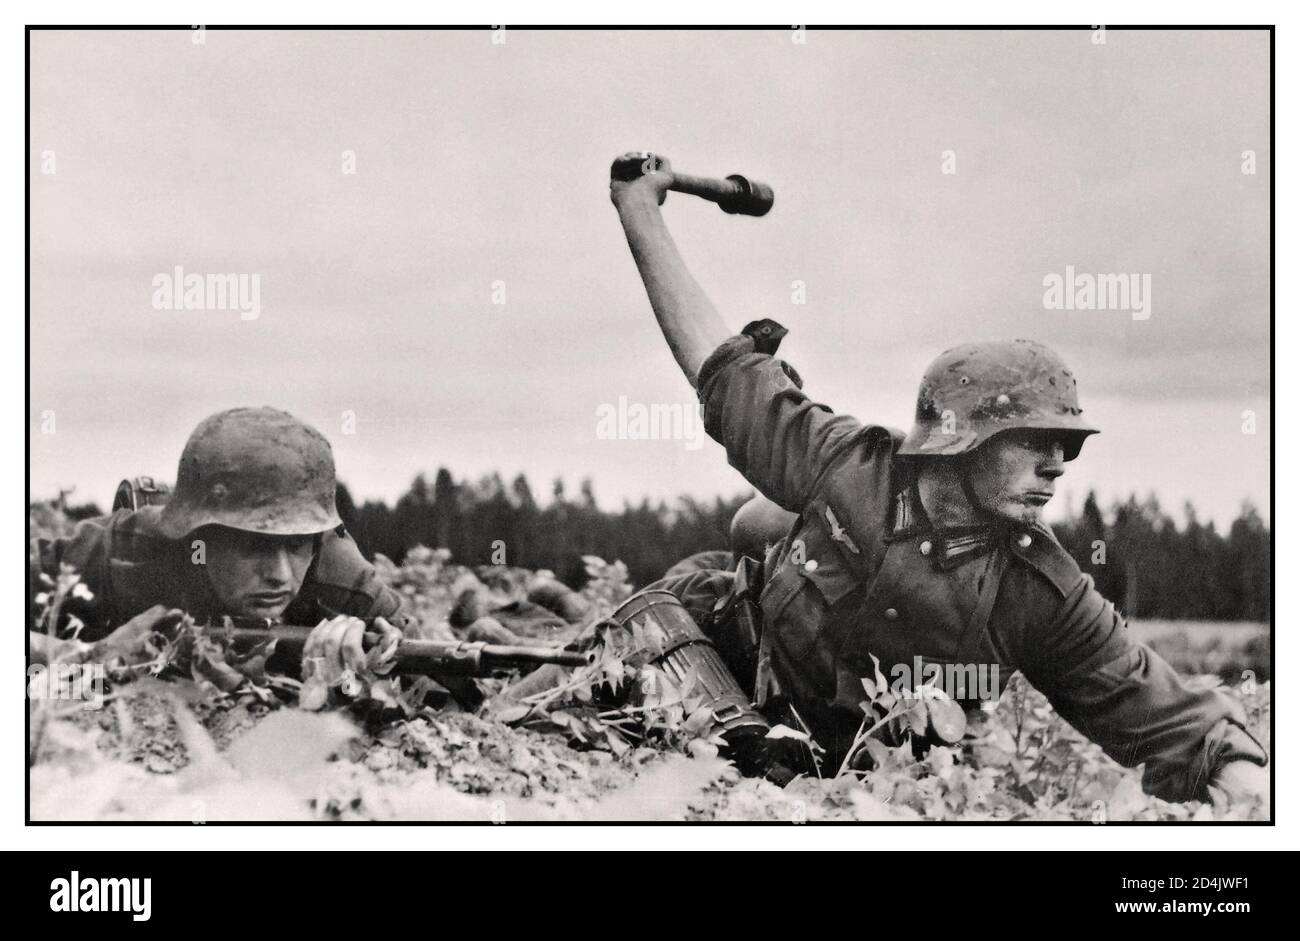 Troupes allemandes de la Seconde Guerre mondiale en Russie, 1941 couché sur le sol, un soldat de l'armée allemande de Wehrmacht lance une grenade à bâton. Les combats sur le front de l'est Seconde Guerre mondiale Banque D'Images